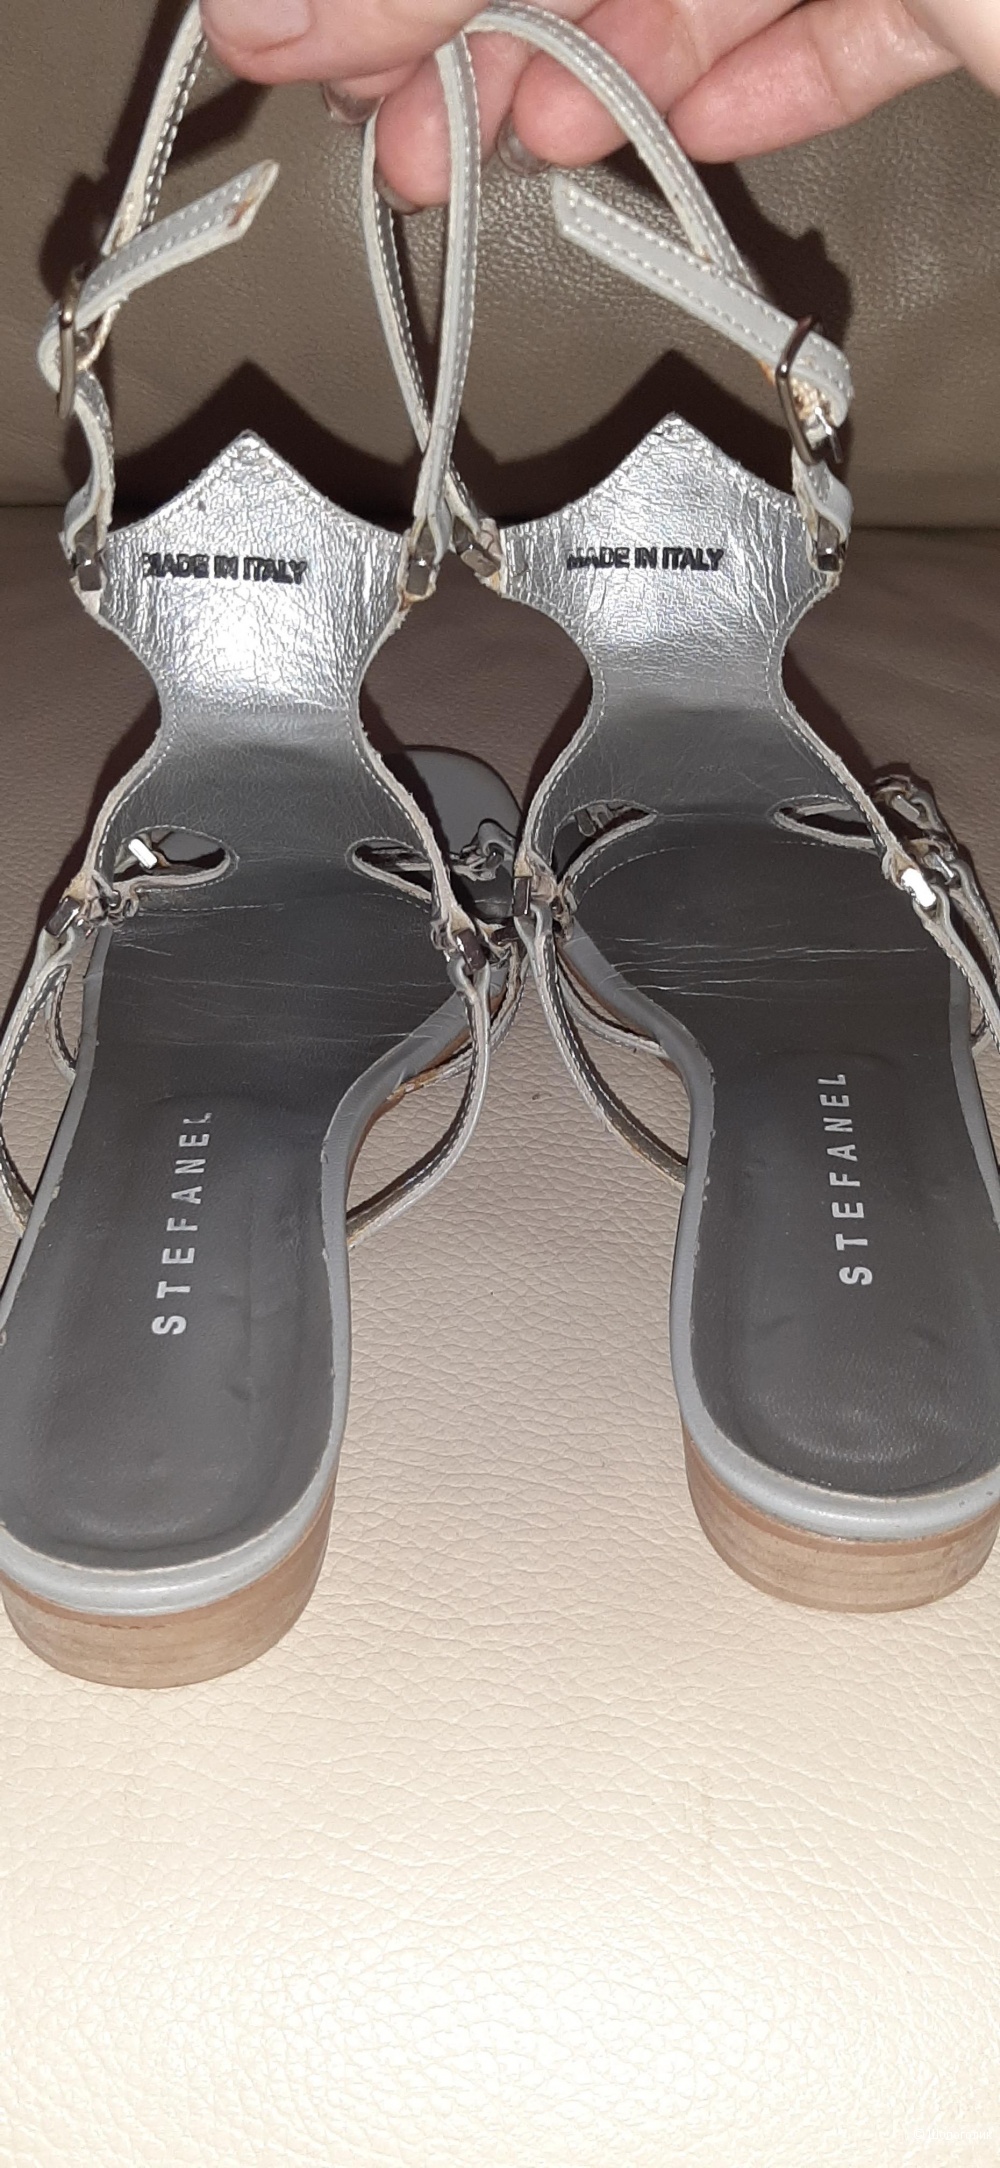 Stefanel босоножки-сандалии, серые , 39 р-р, 25 см